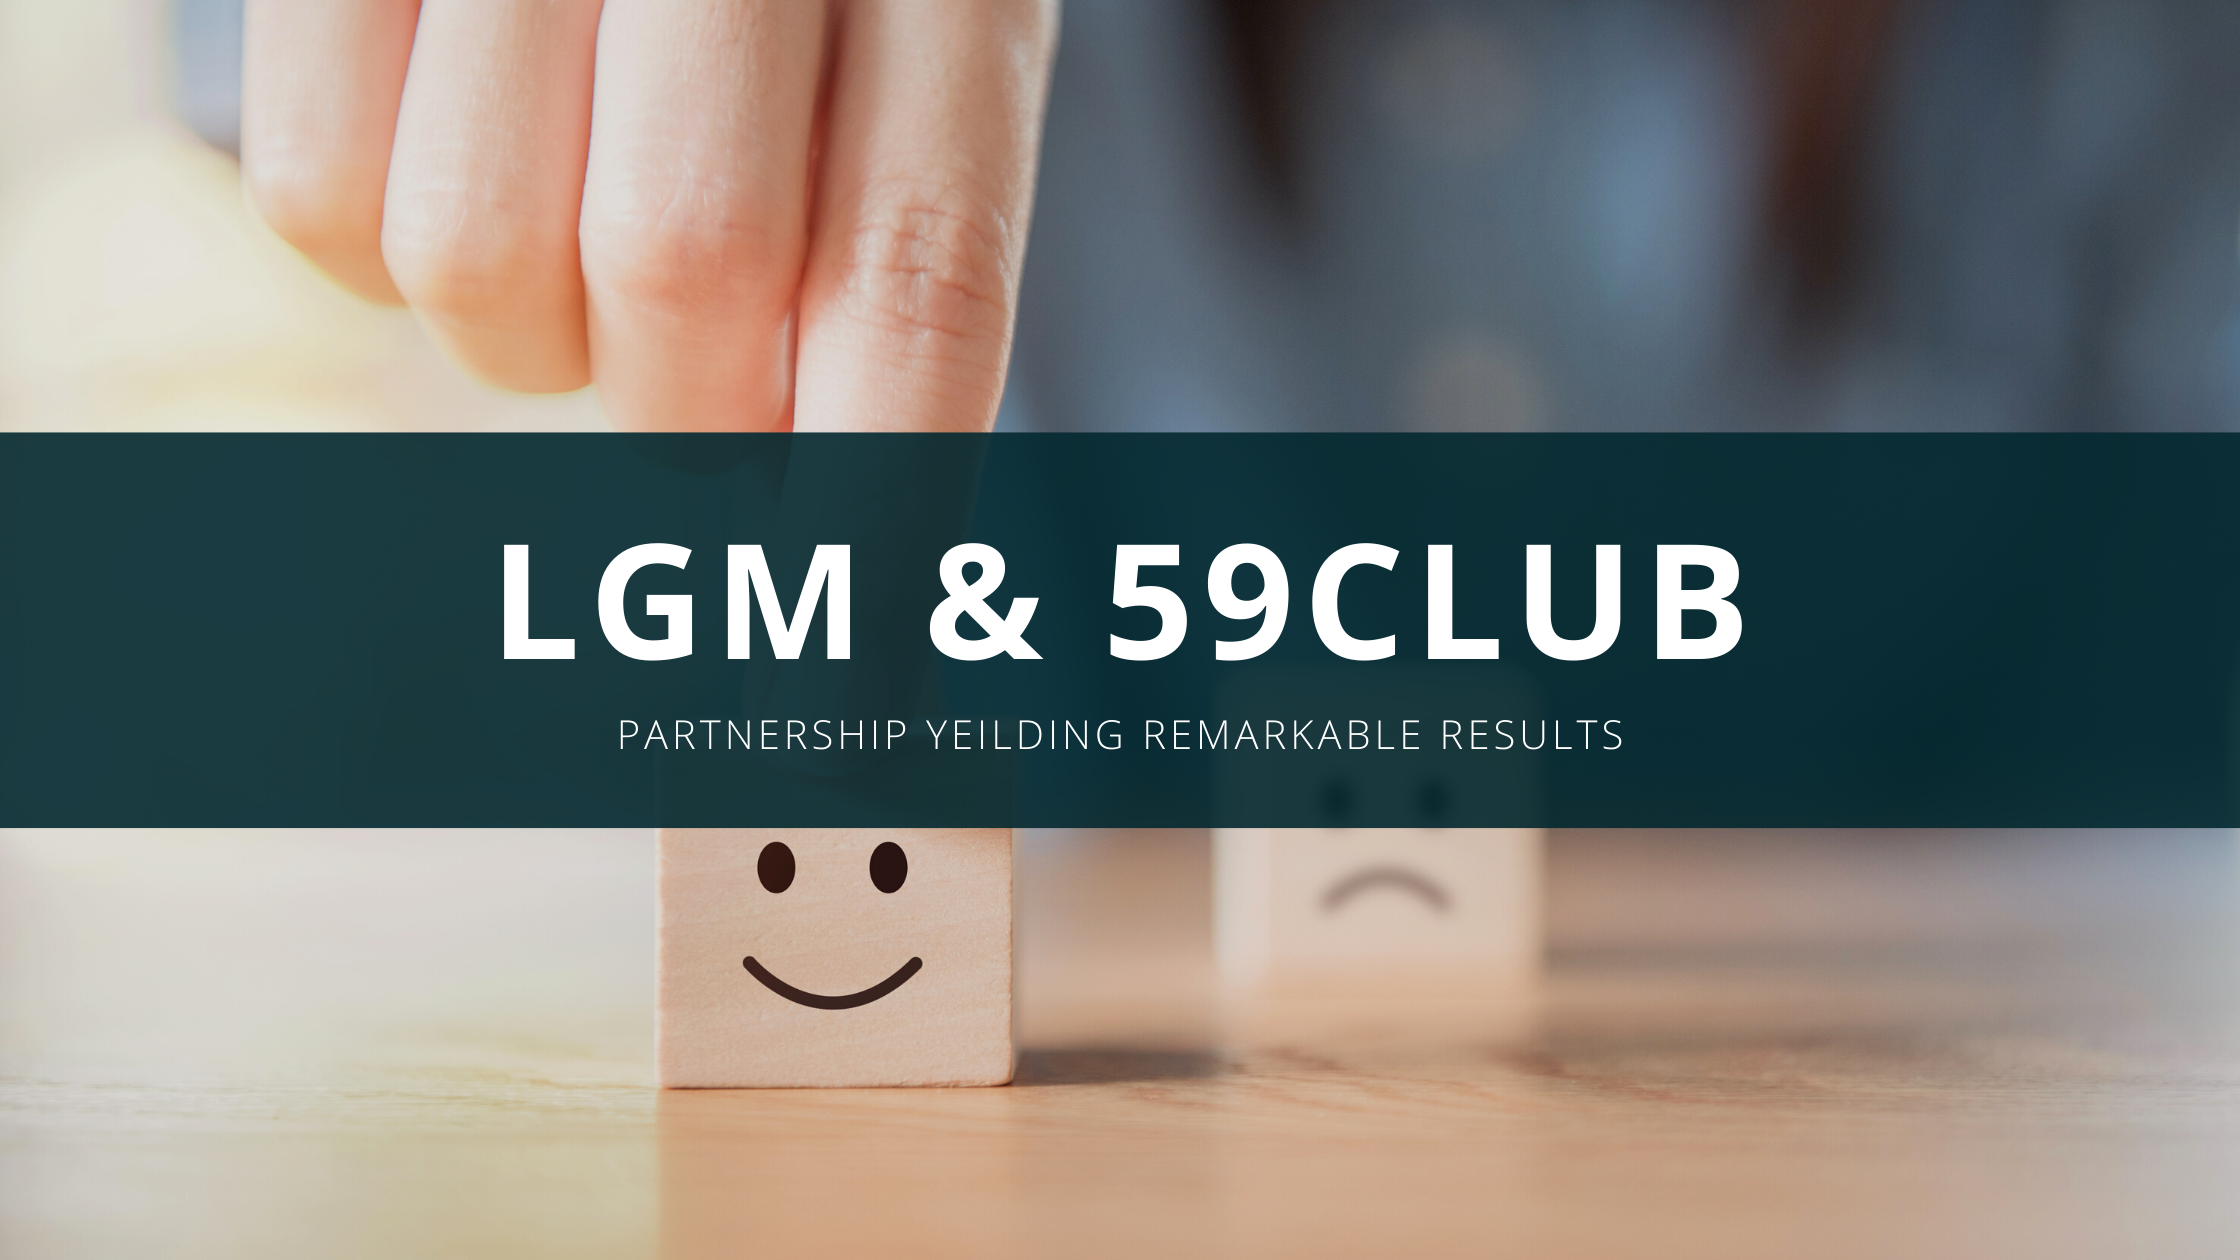 LGM & 59club Partnership